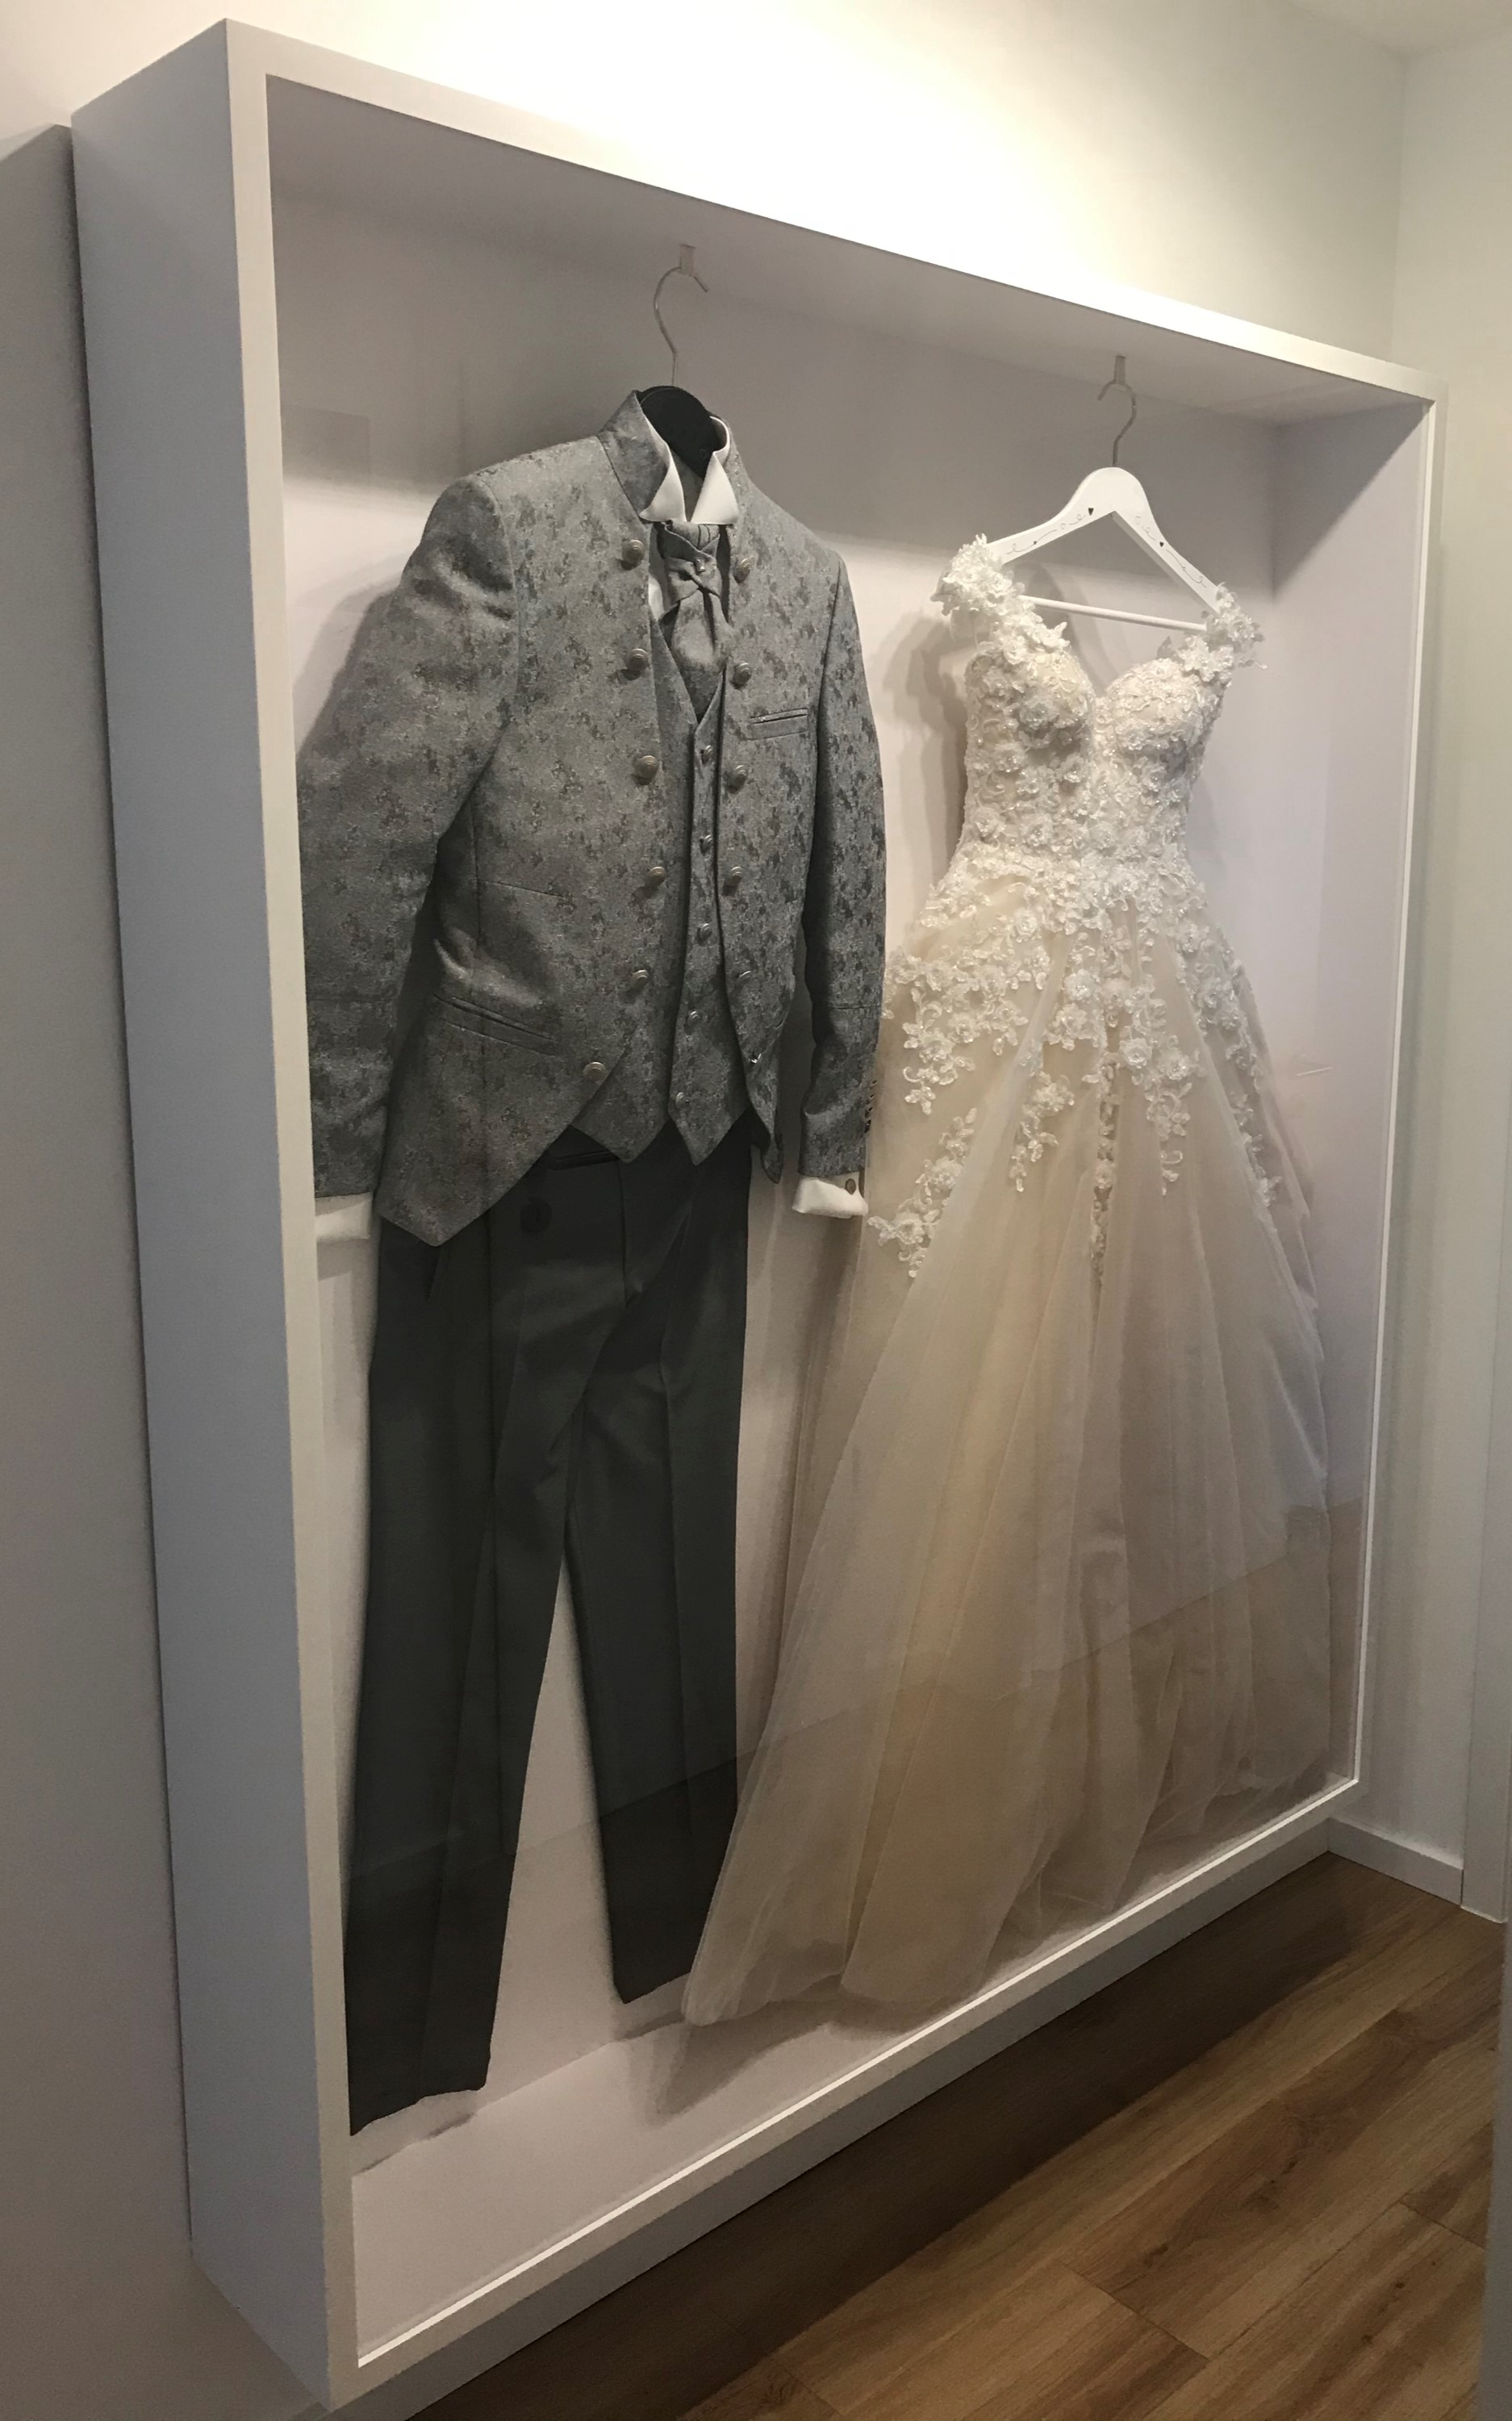 Einrahmung-Hochzeitskleid-grosser-Objektrahmen